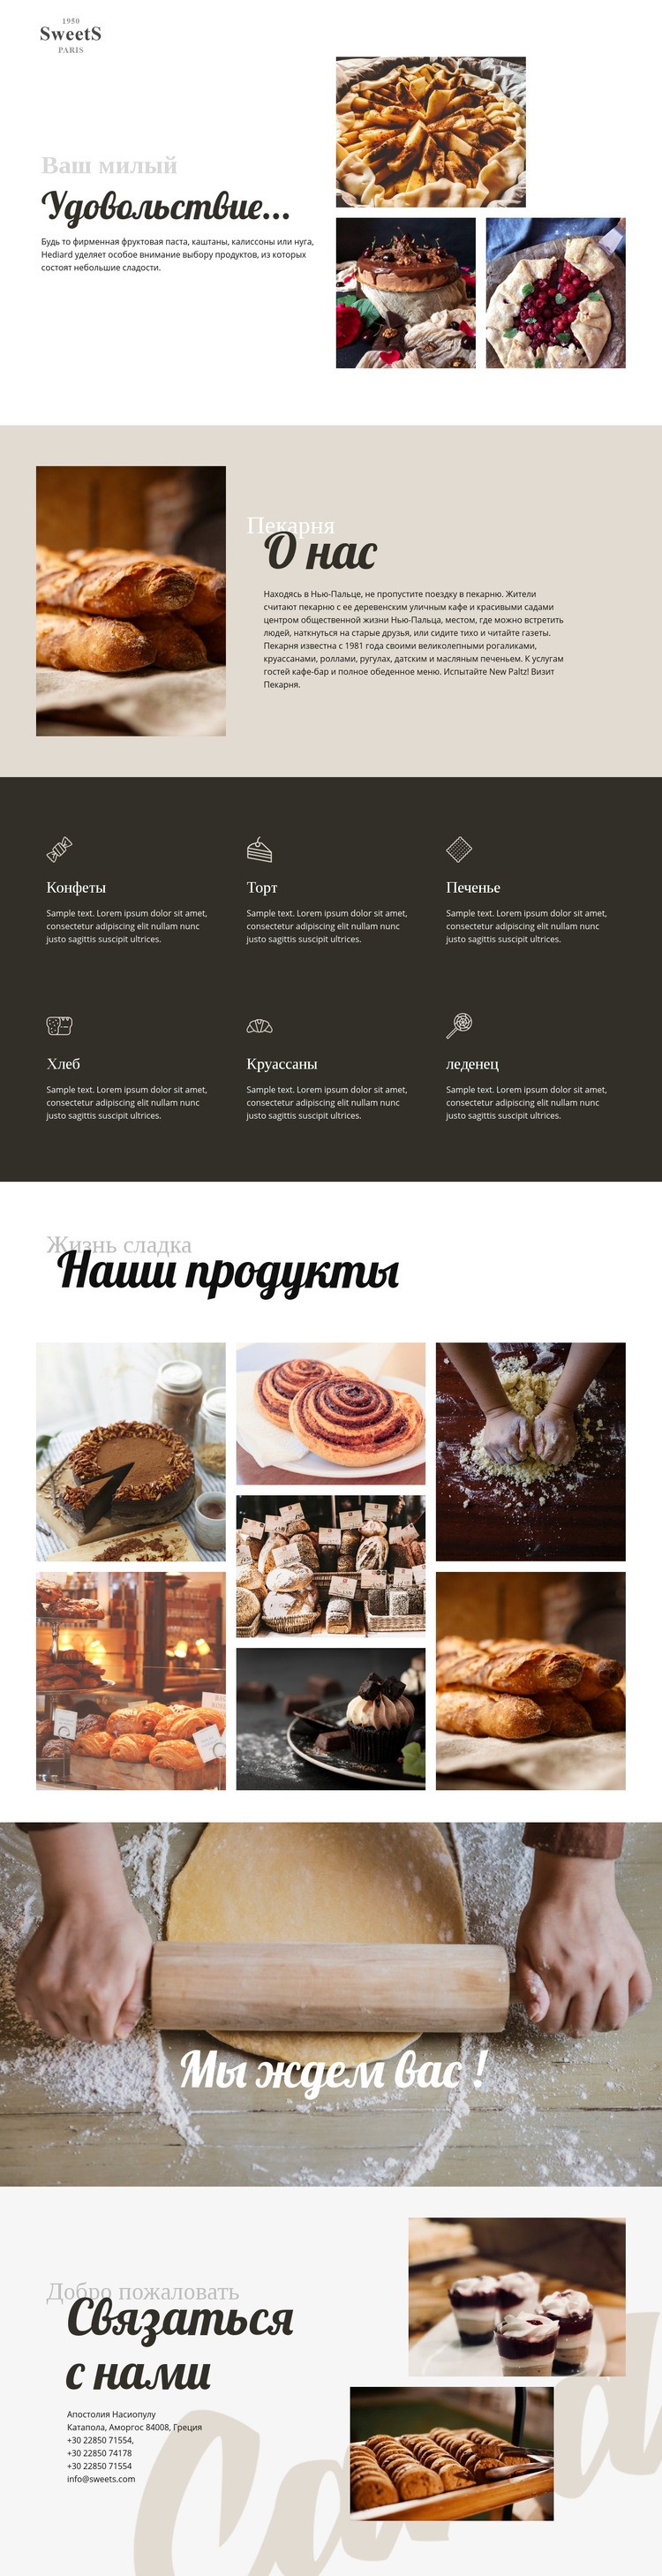 Торты и выпечка Мокап веб-сайта